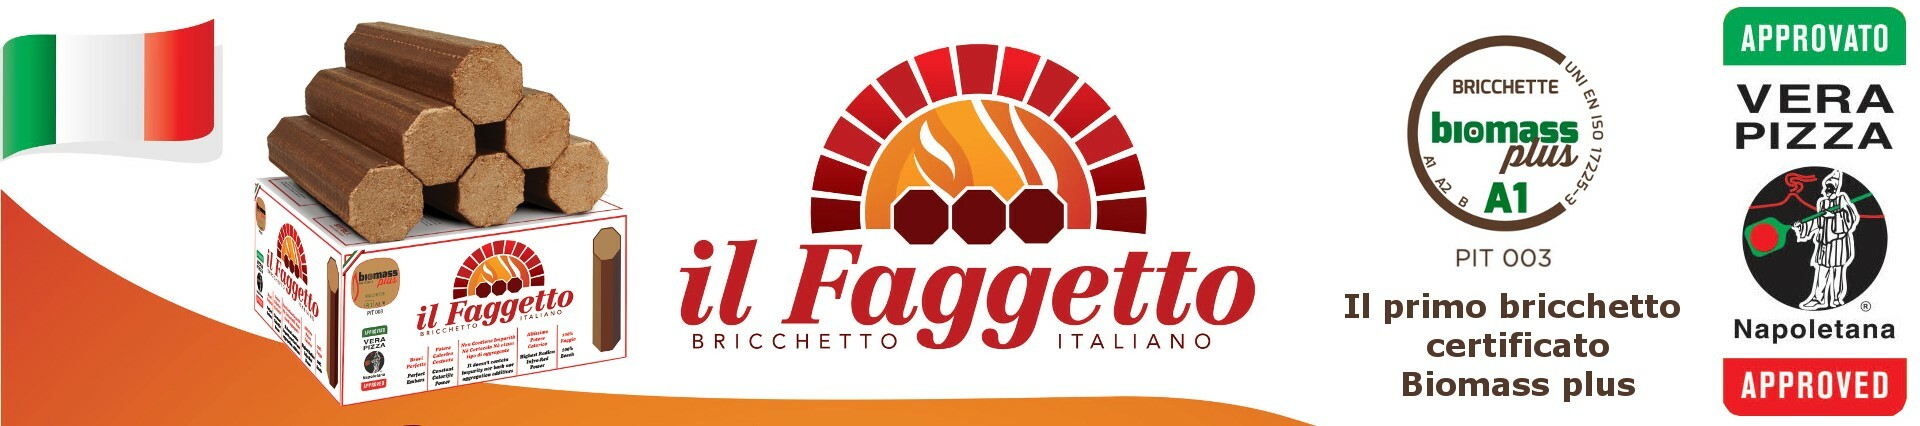 Faggetto